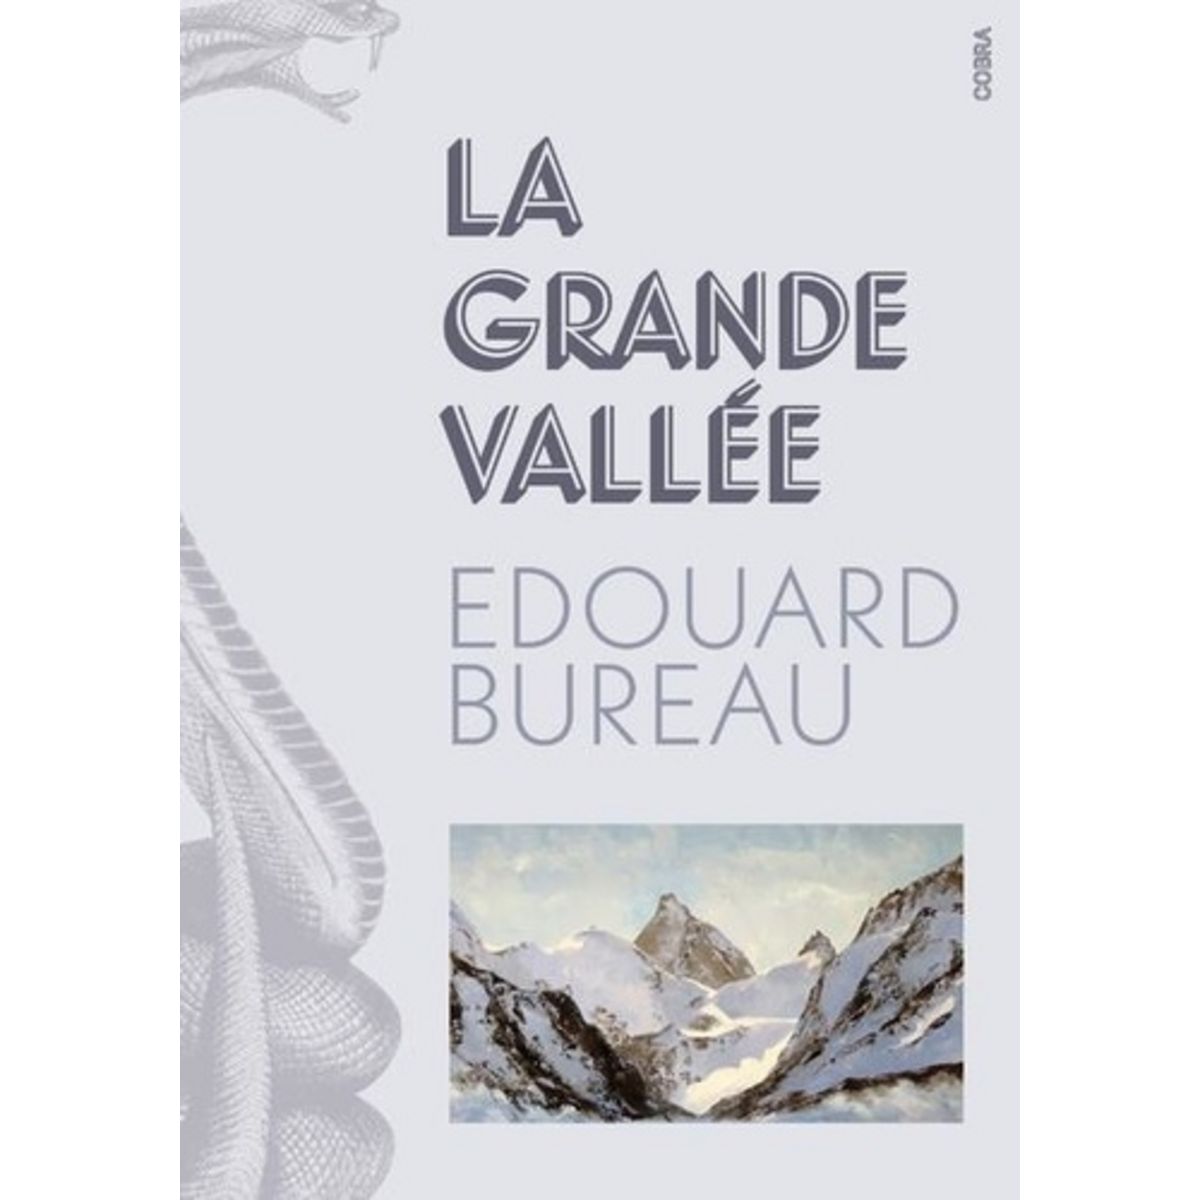  LA GRANDE VALLEE, Bureau Edouard